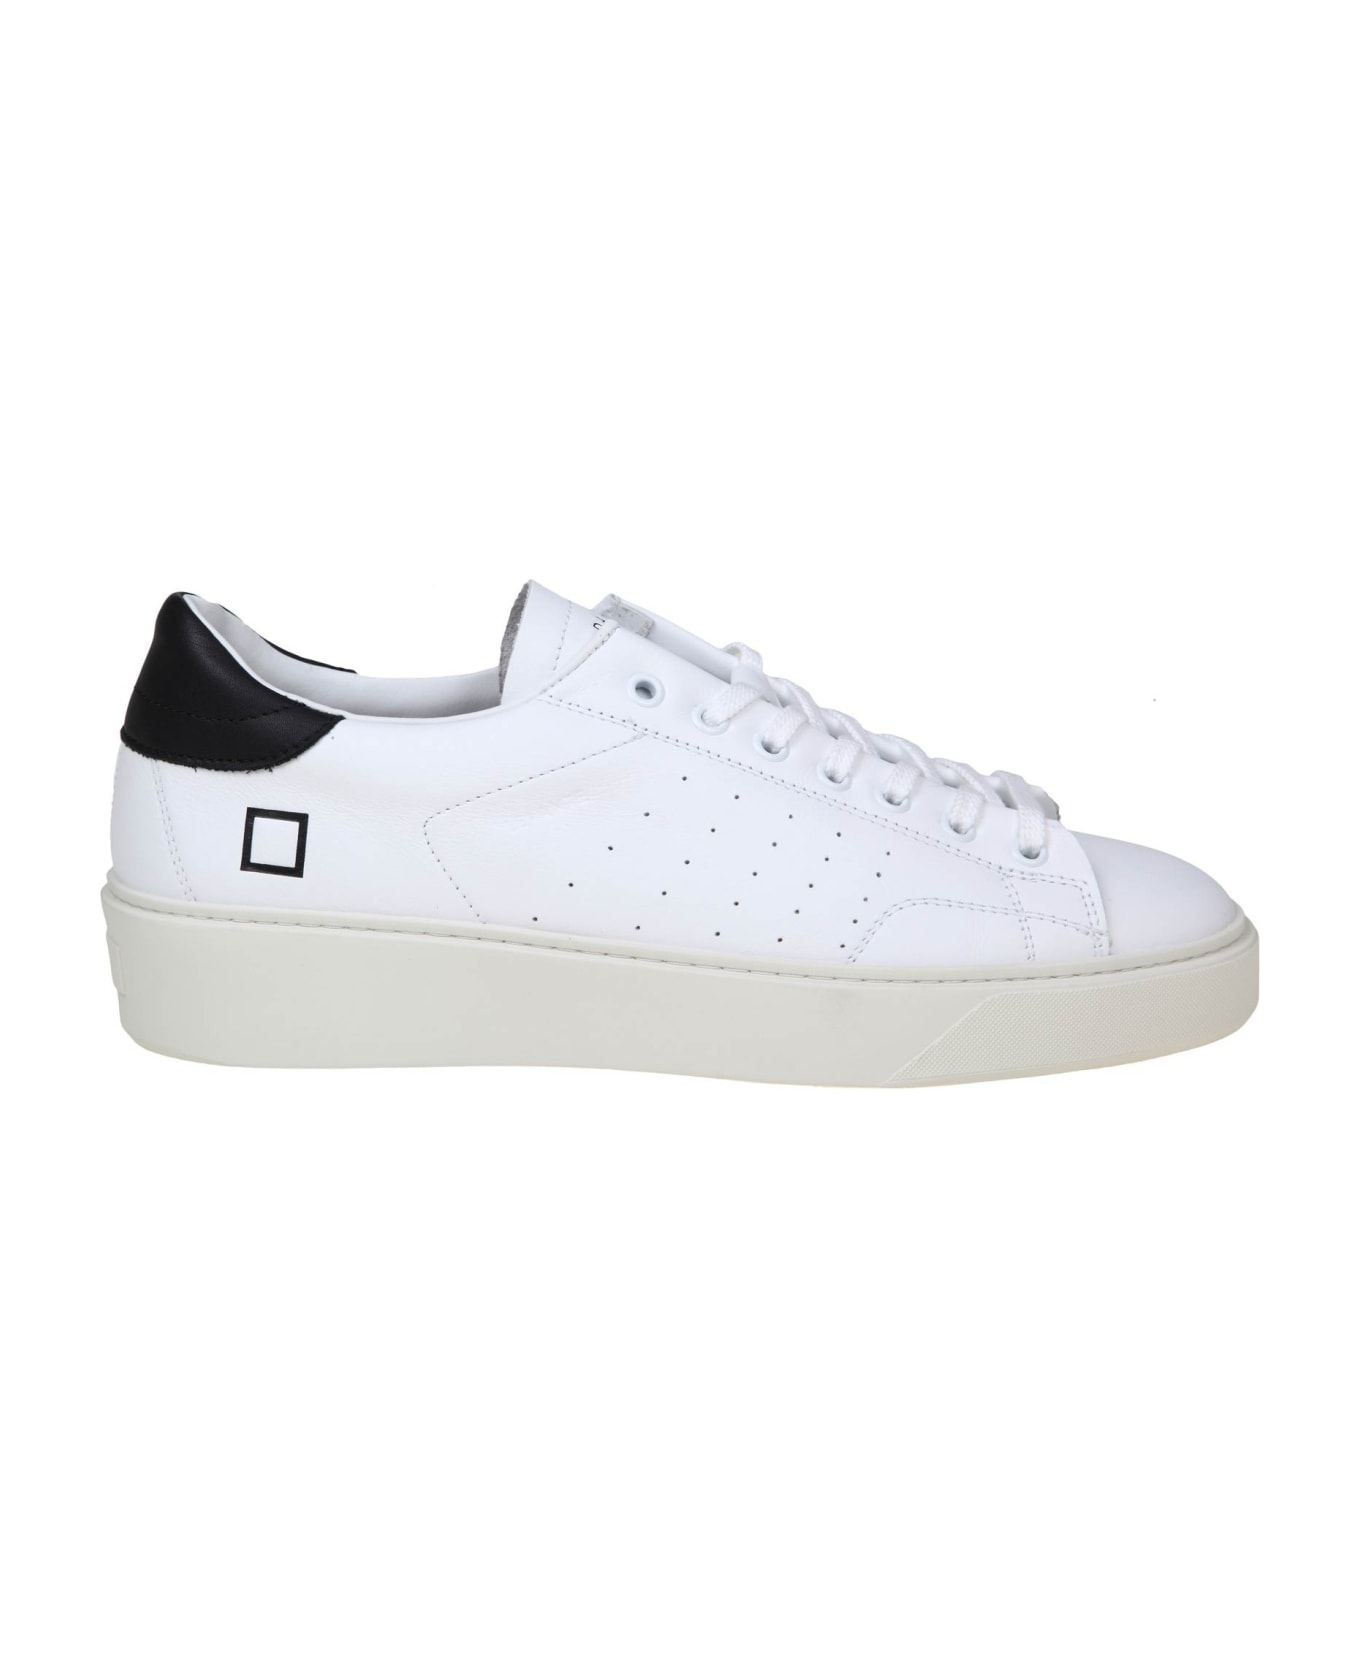 D.A.T.E. Levante Sneakers In Black/white Leather - White/Black